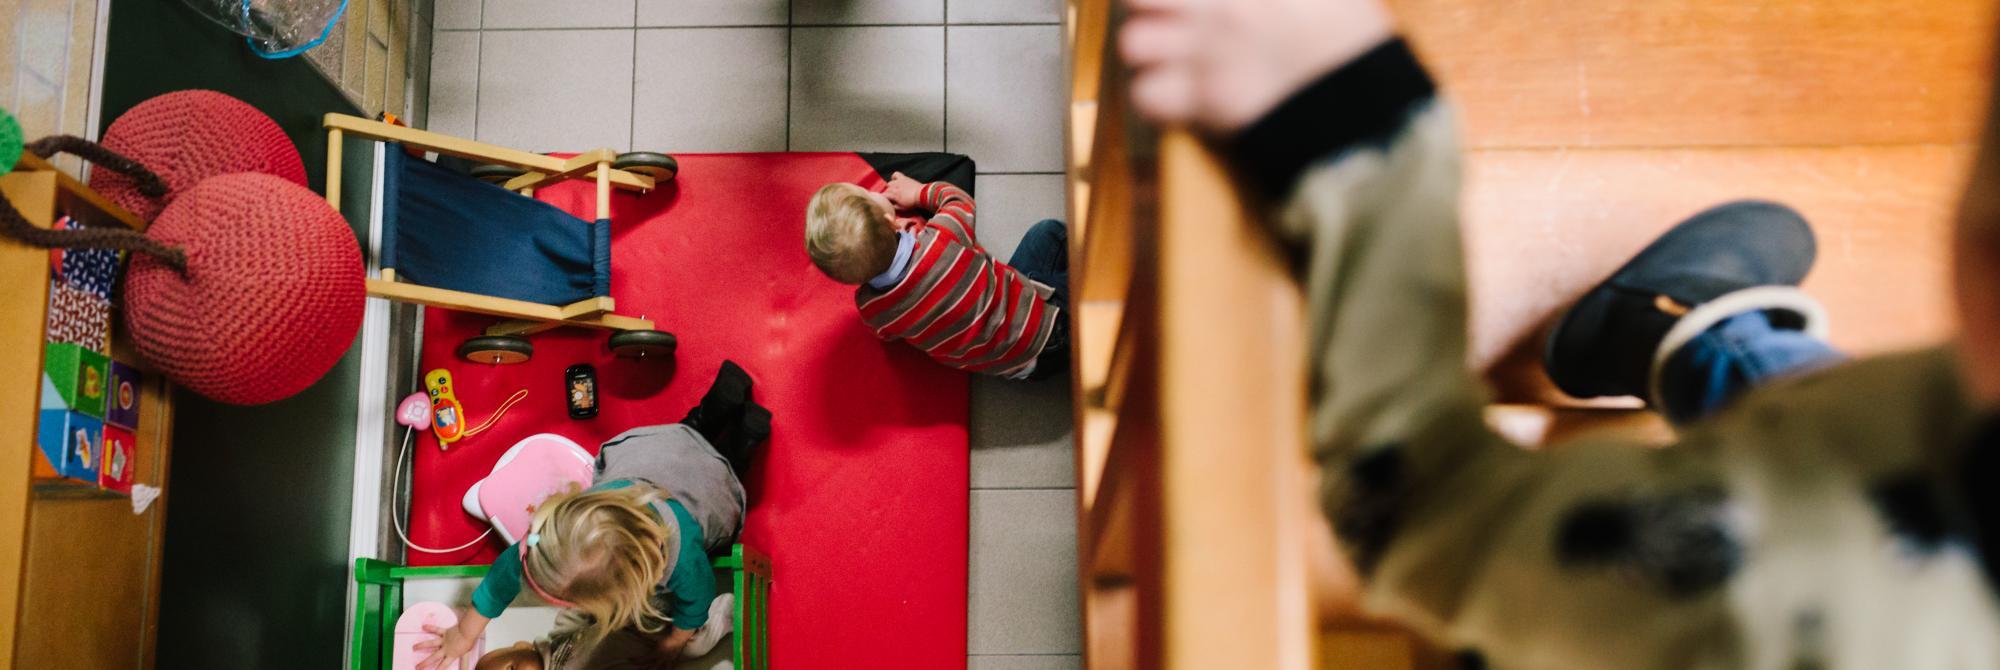 Kinderen komen van de trap met doorkijk naar speelhoek beneden